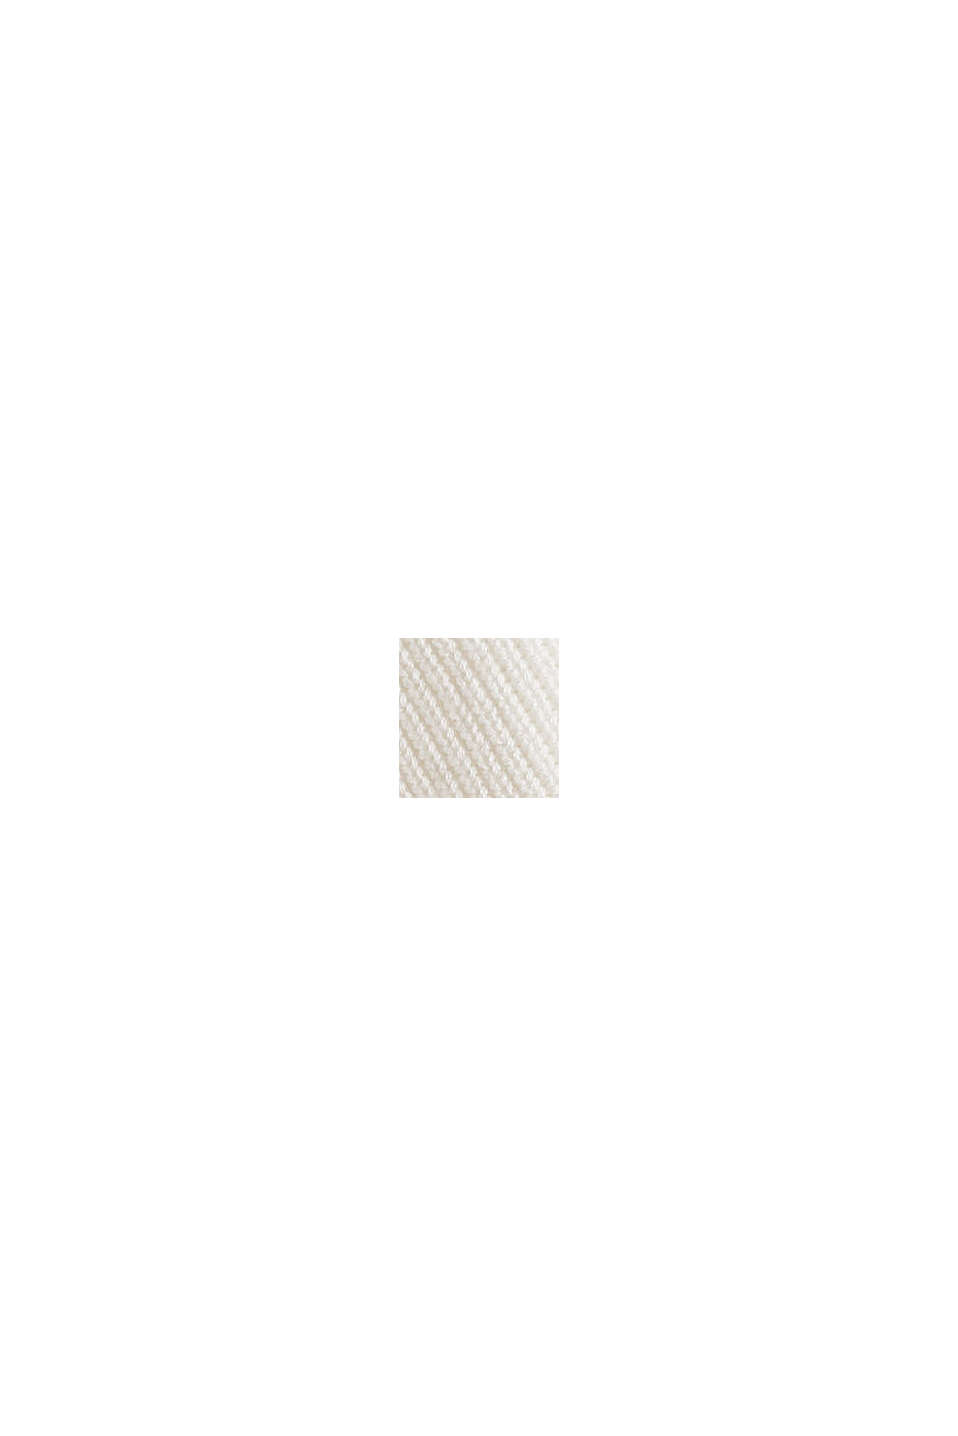 Cardigan en maille côtelée de coton biologique mélangé, OFF WHITE, swatch